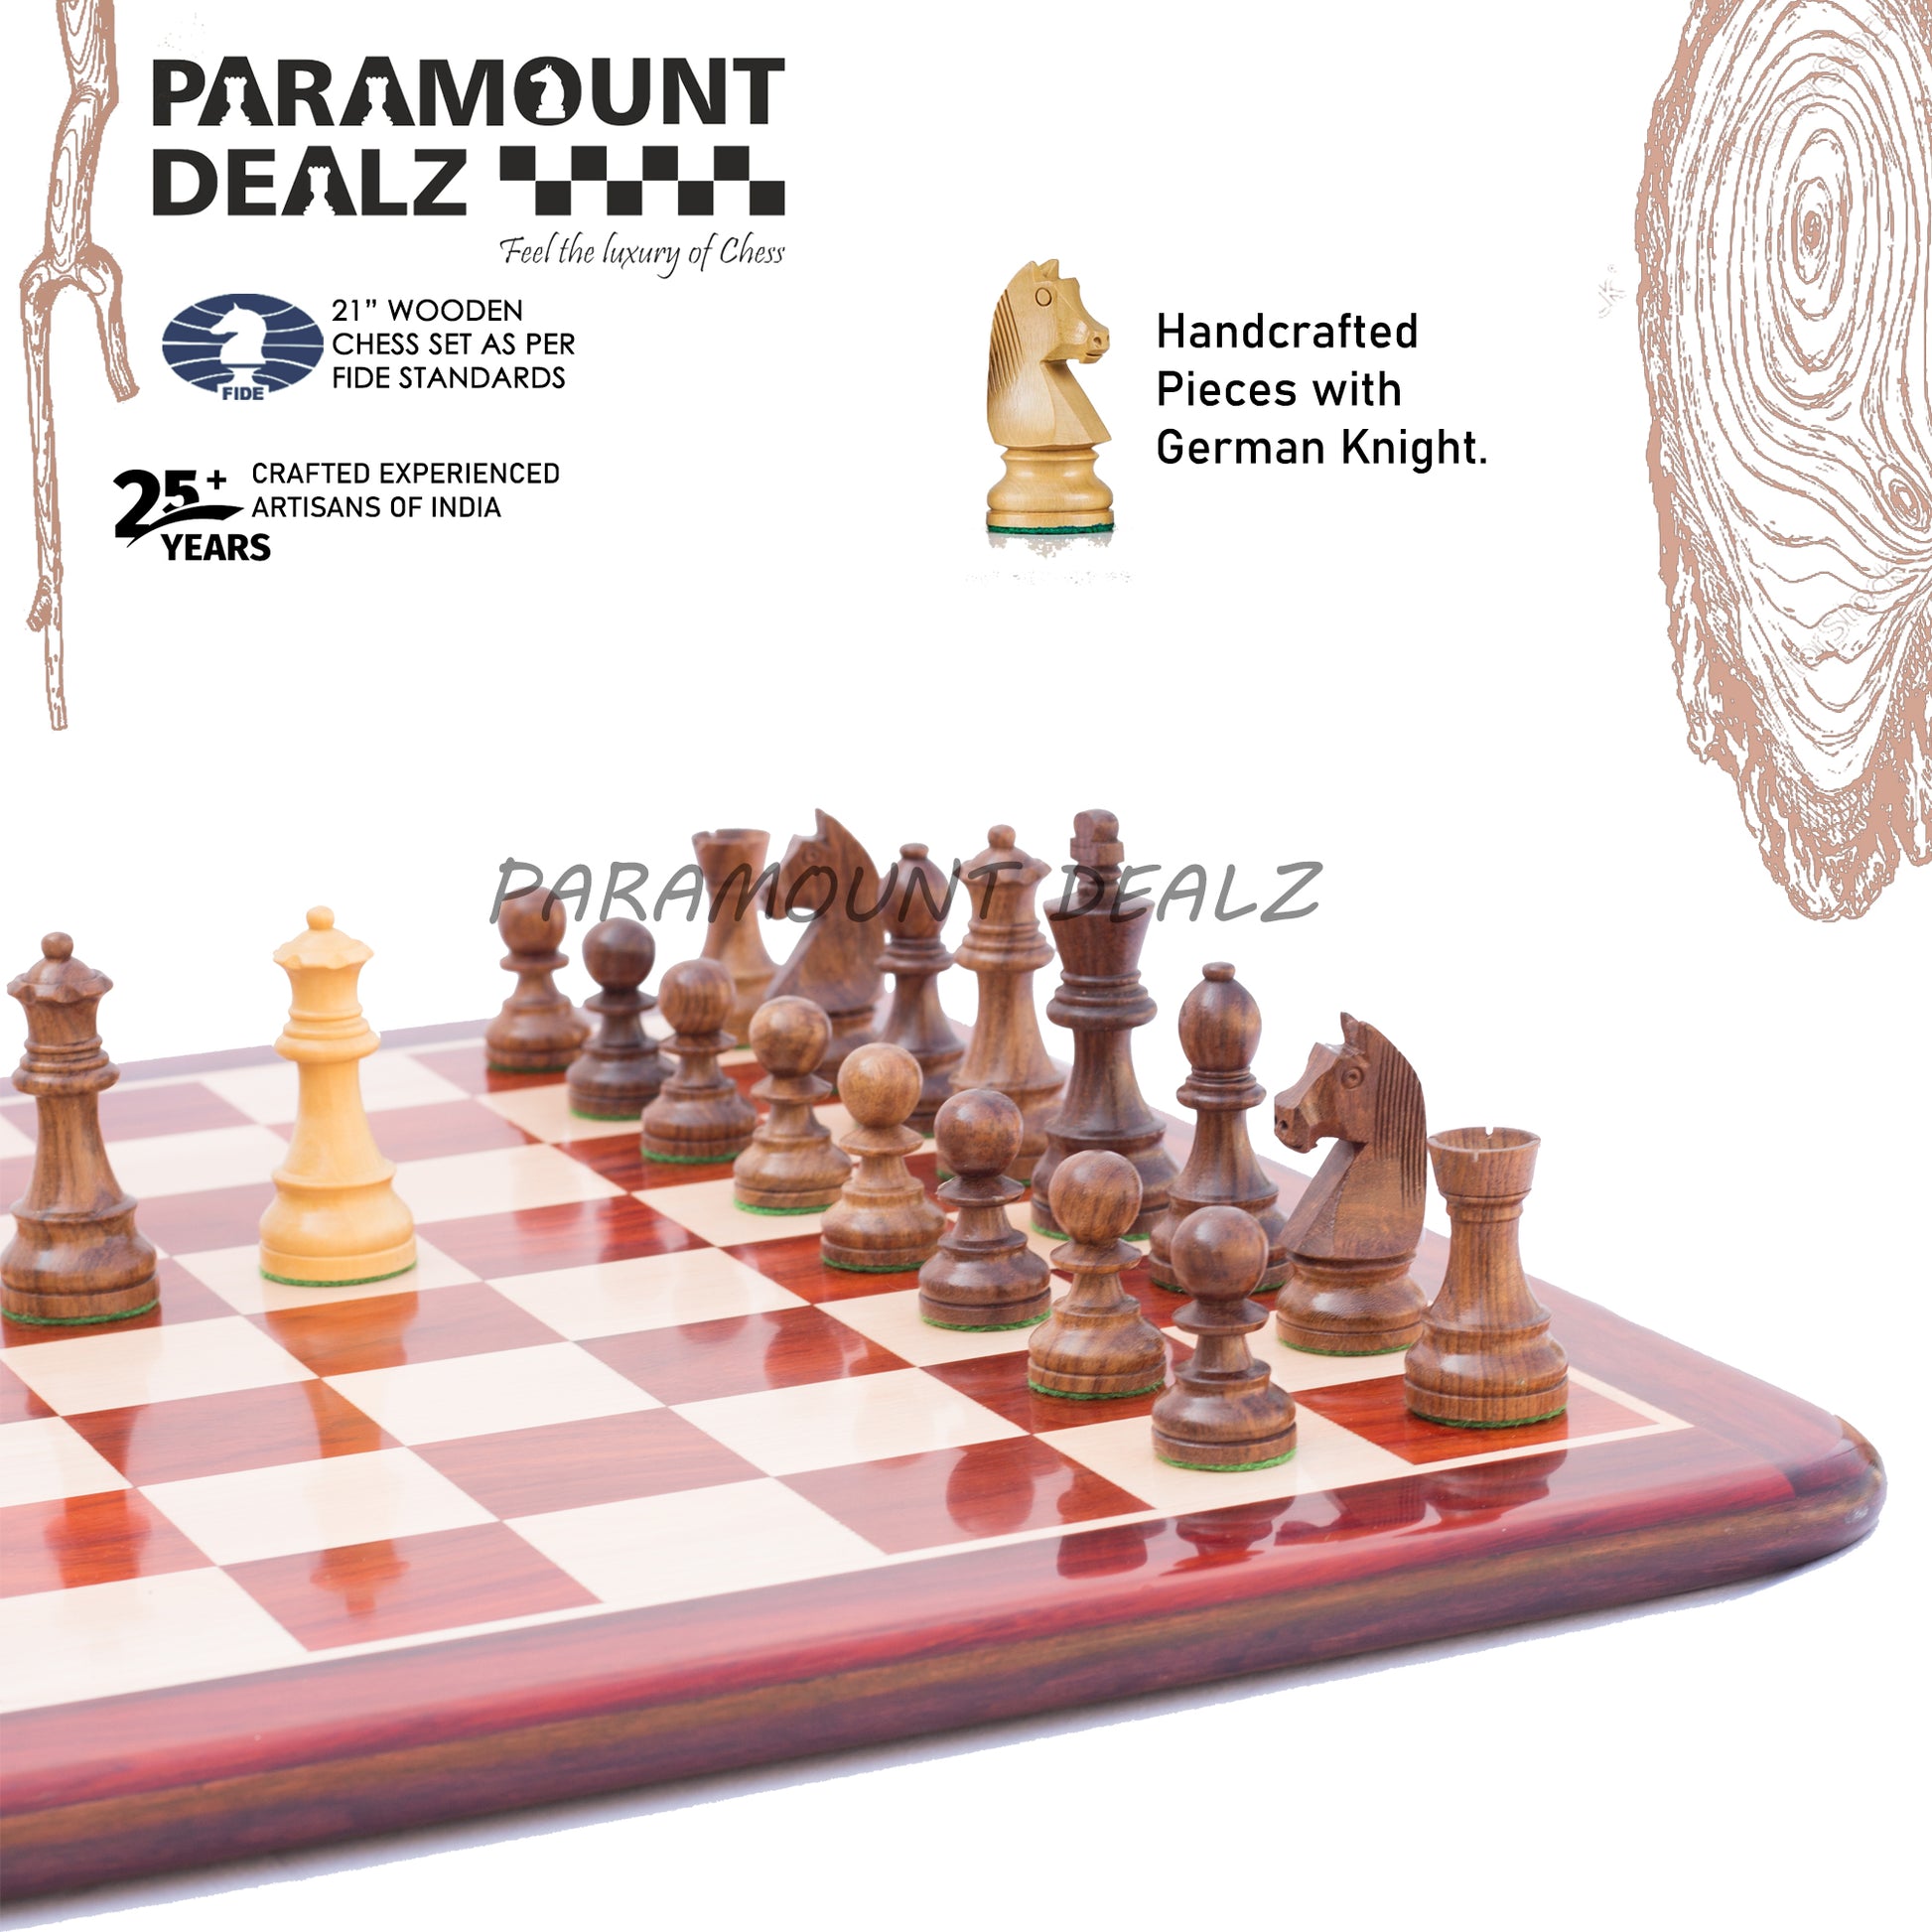 Petrick Budrosewood Chess Set